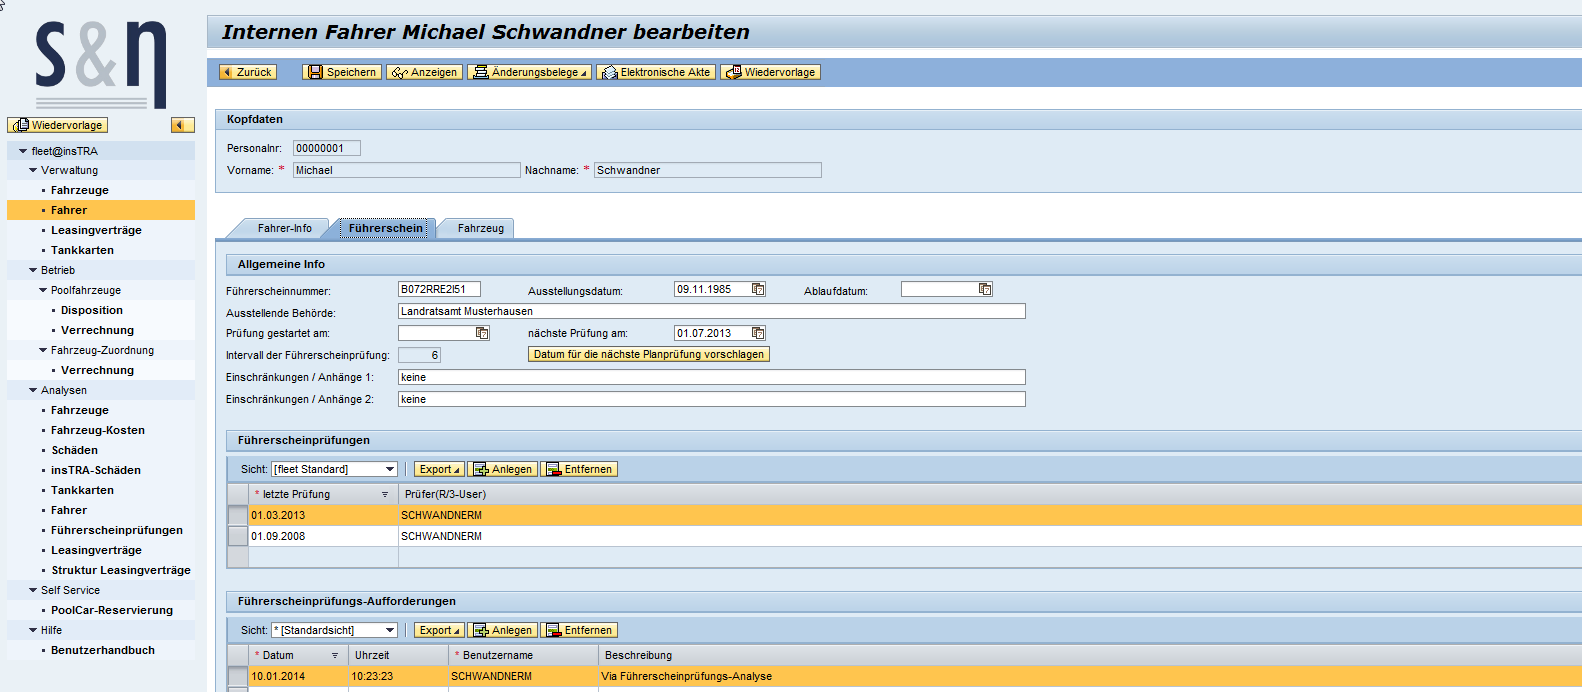 Fahrerverwaltung fleet 3.0 for SAP ERP Führerscheinprüfung, automatischer Versand von Aufforderungen z.b.